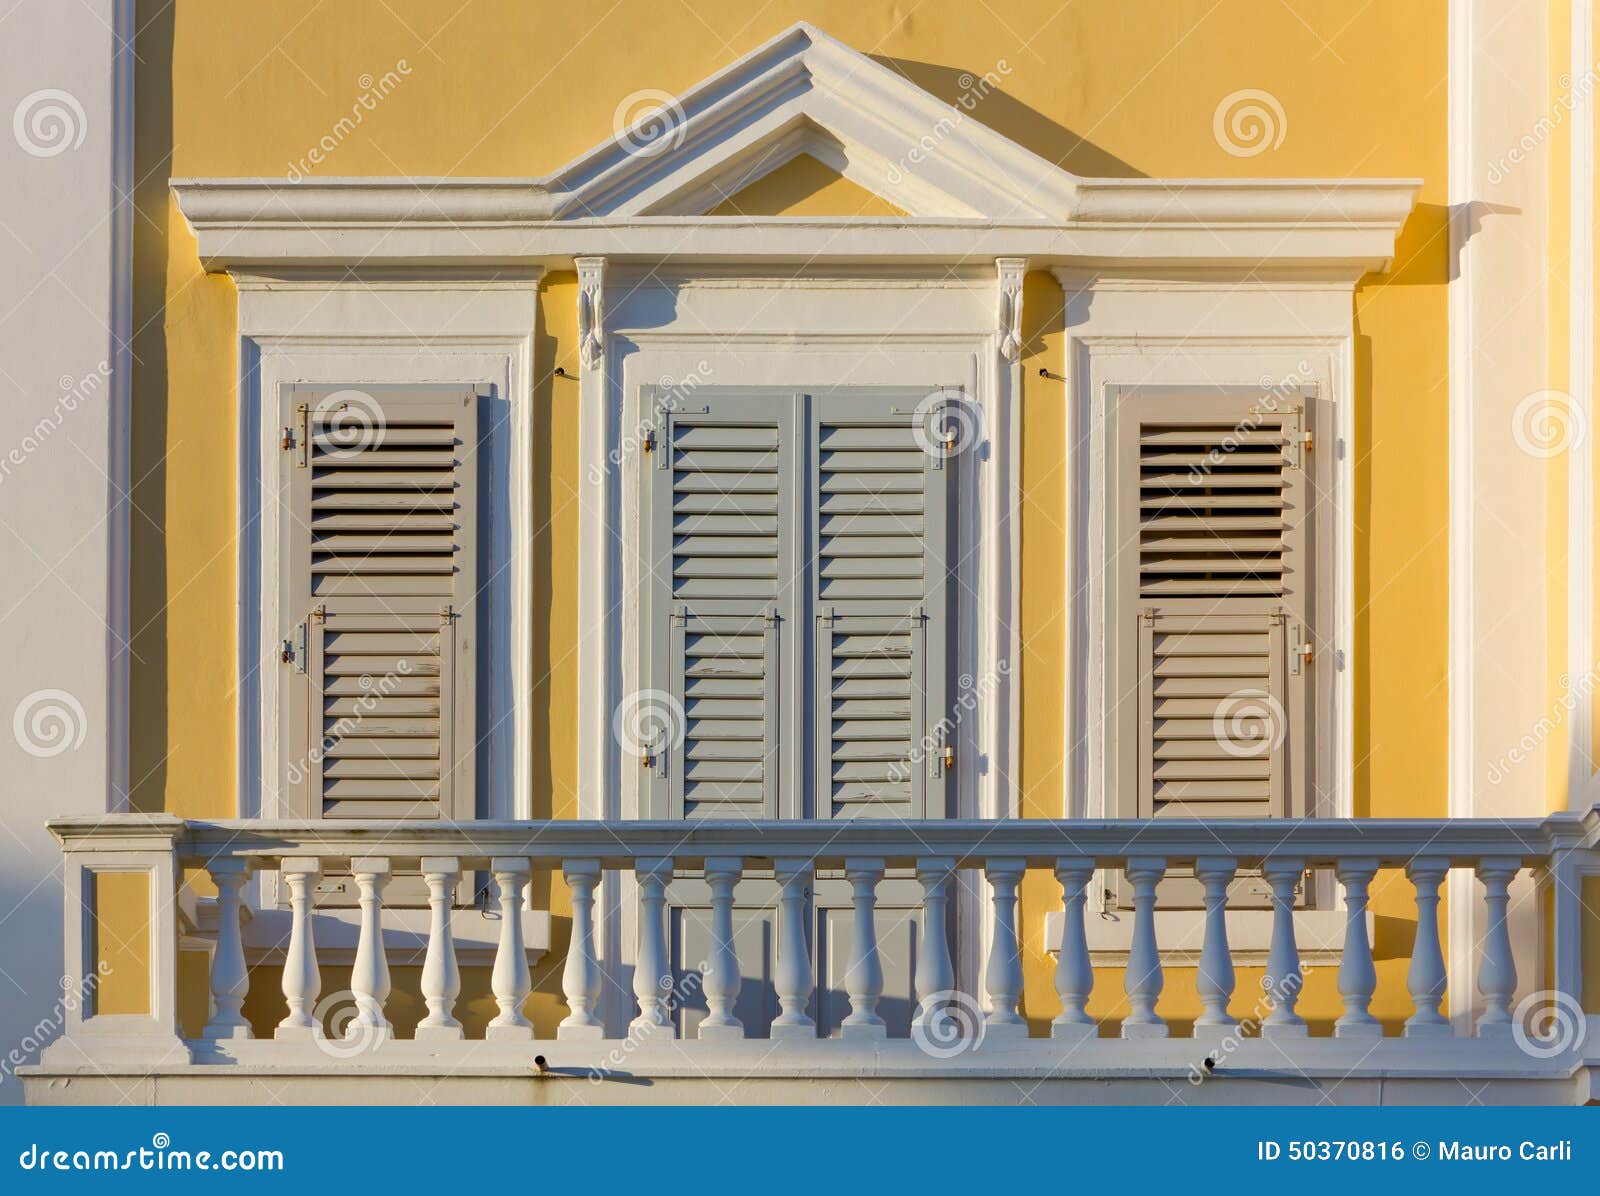 neoclassic balcony